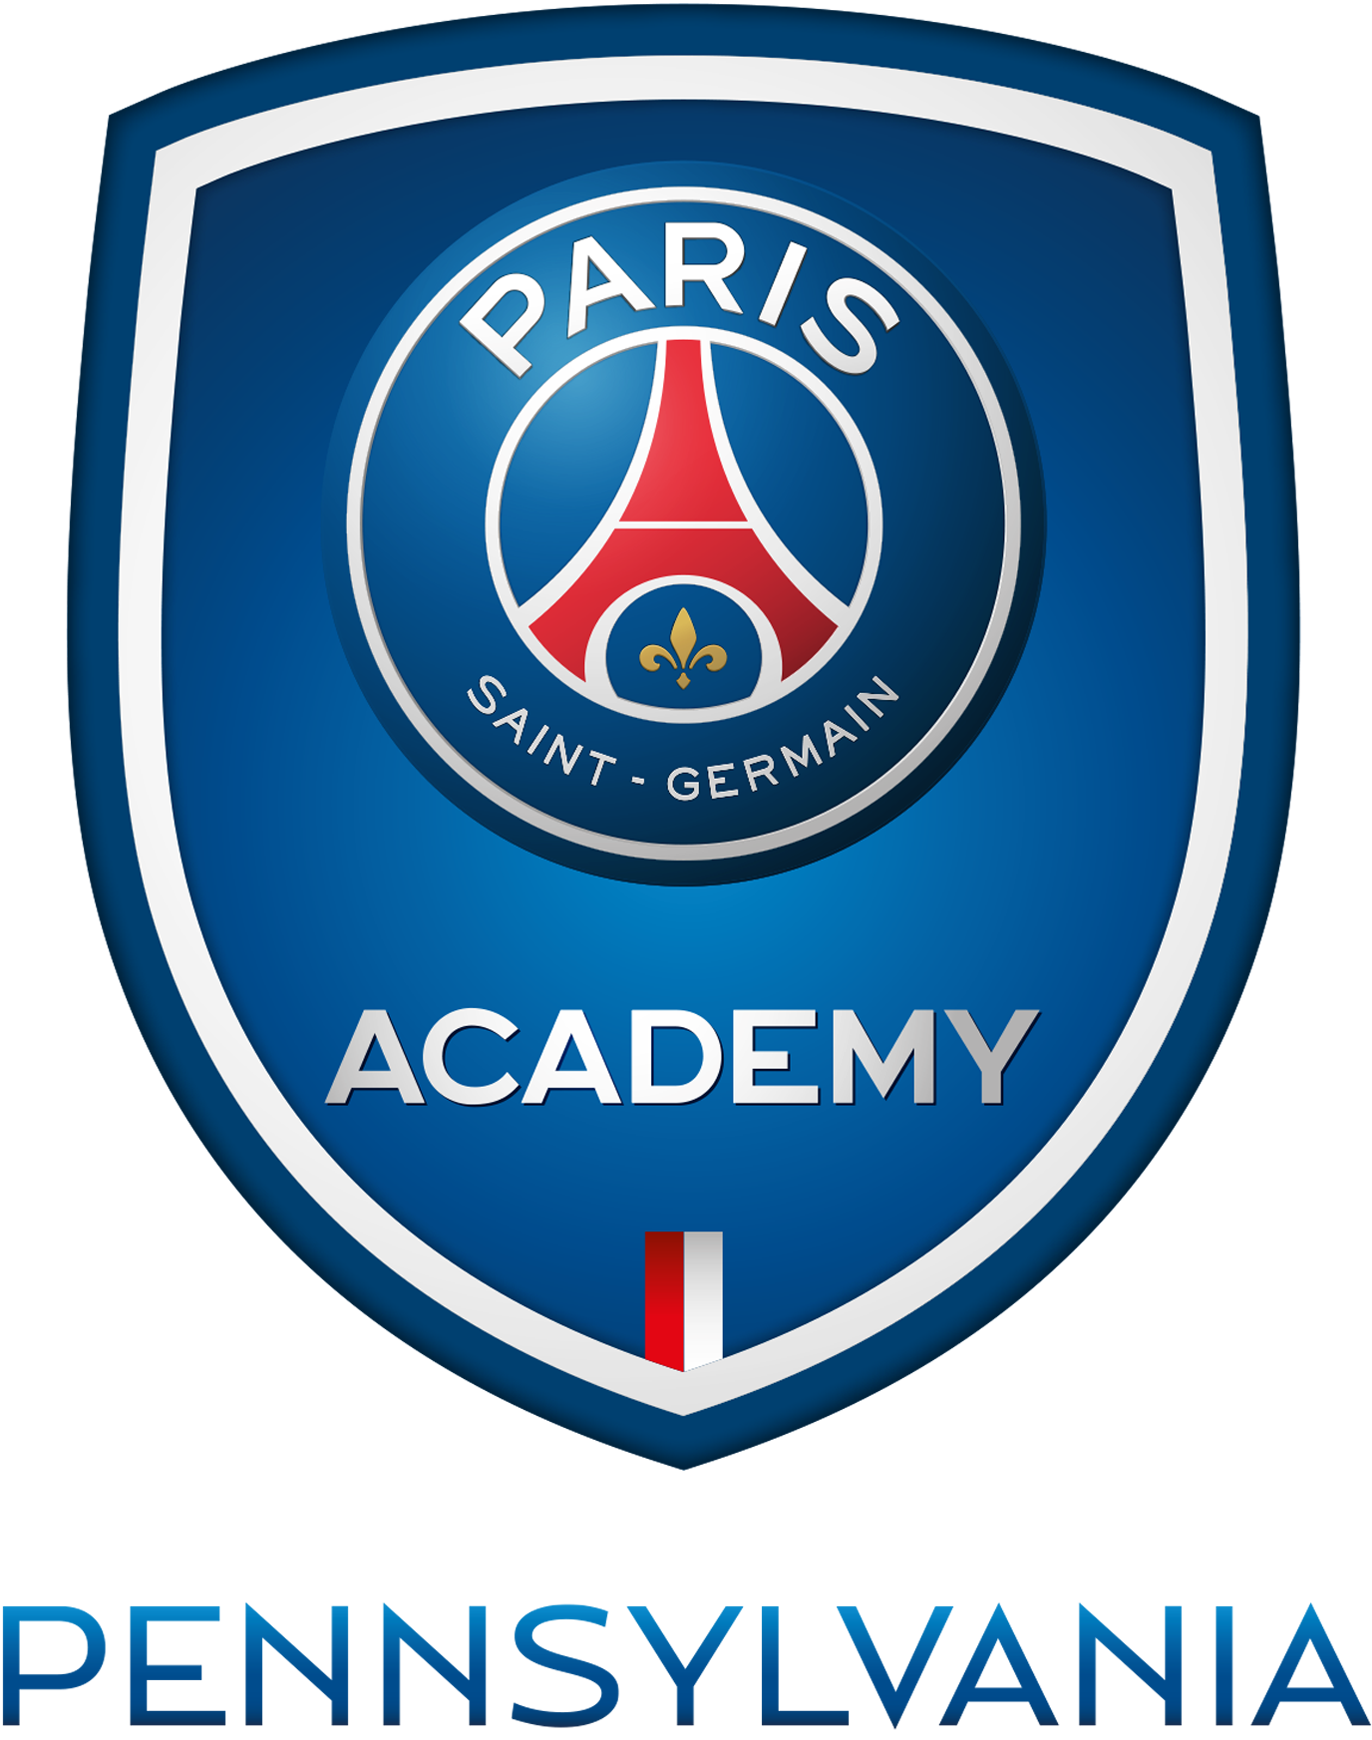 Paris Saint-Germain Academy Pennsylvania Soccer Club